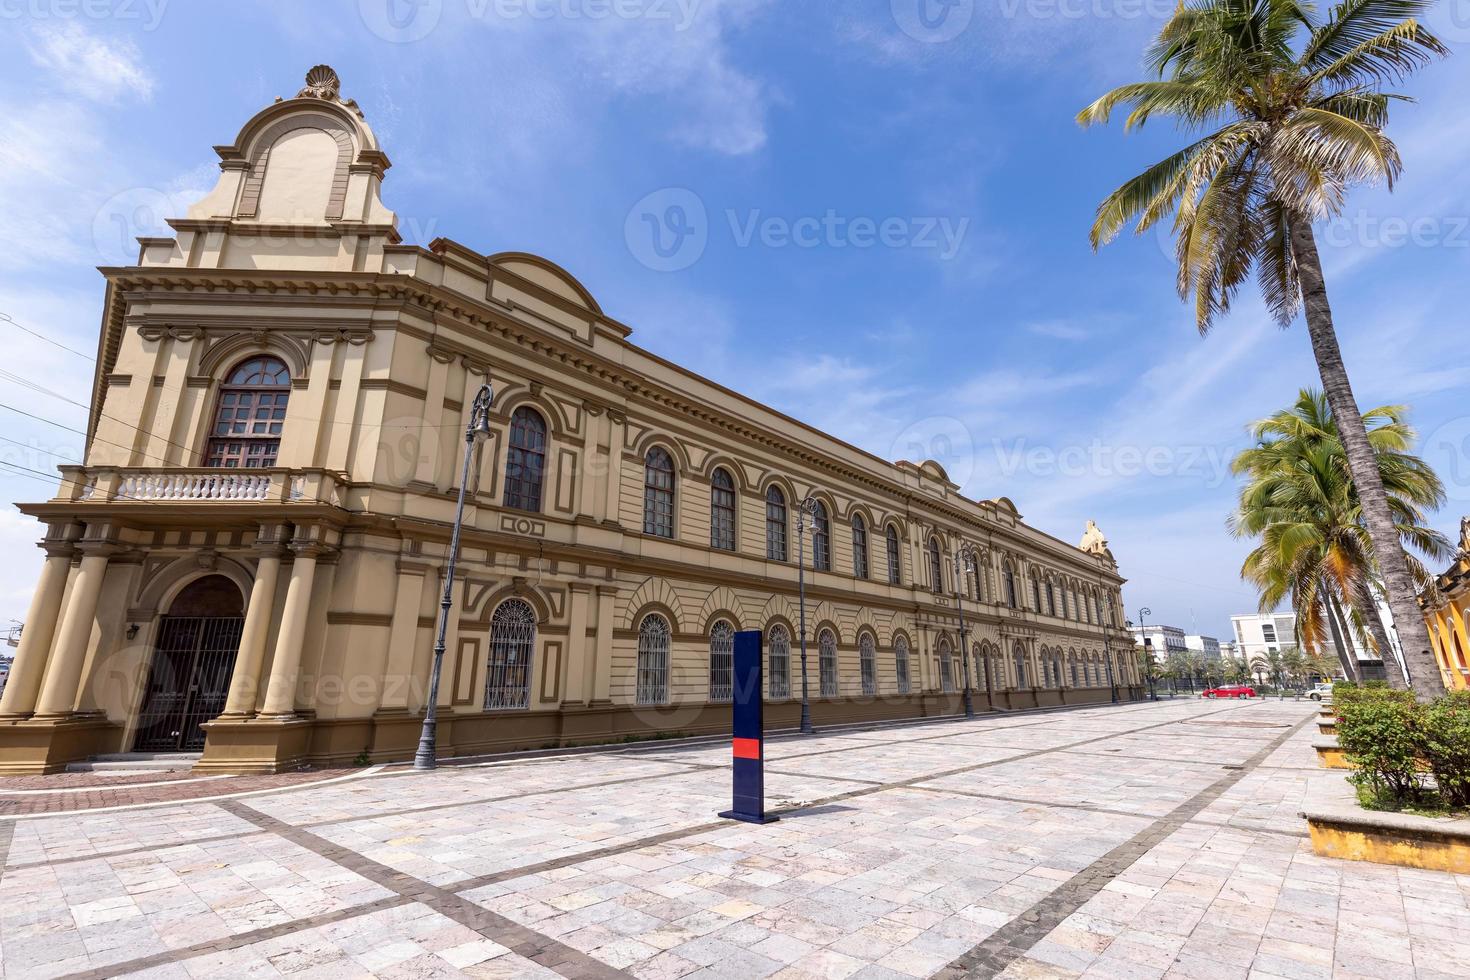 veracruz, bunte straßen und koloniale häuser im historischen stadtzentrum, eine der wichtigsten touristenattraktionen der stadt foto